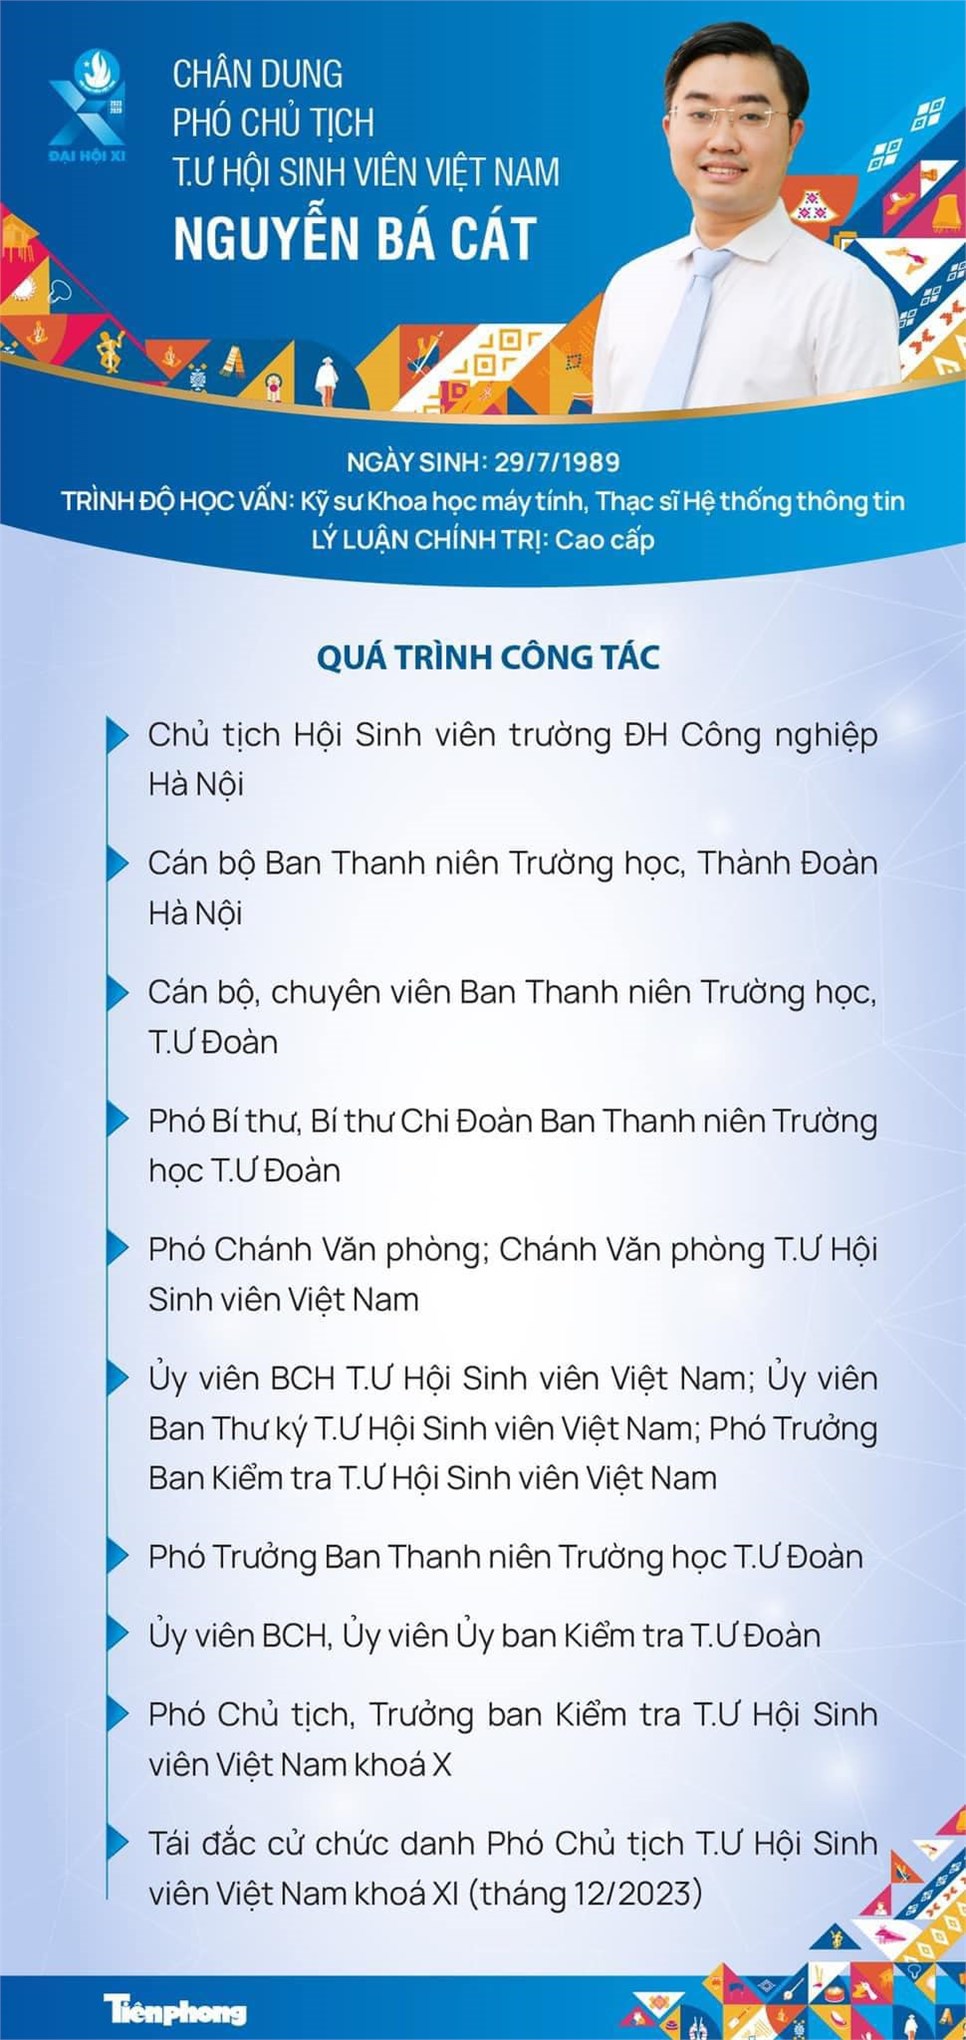 Chân dung đ/c Nguyễn Bá Cát - Phó Chủ tịch TW Hội Sinh viên Việt Nam khoá XI